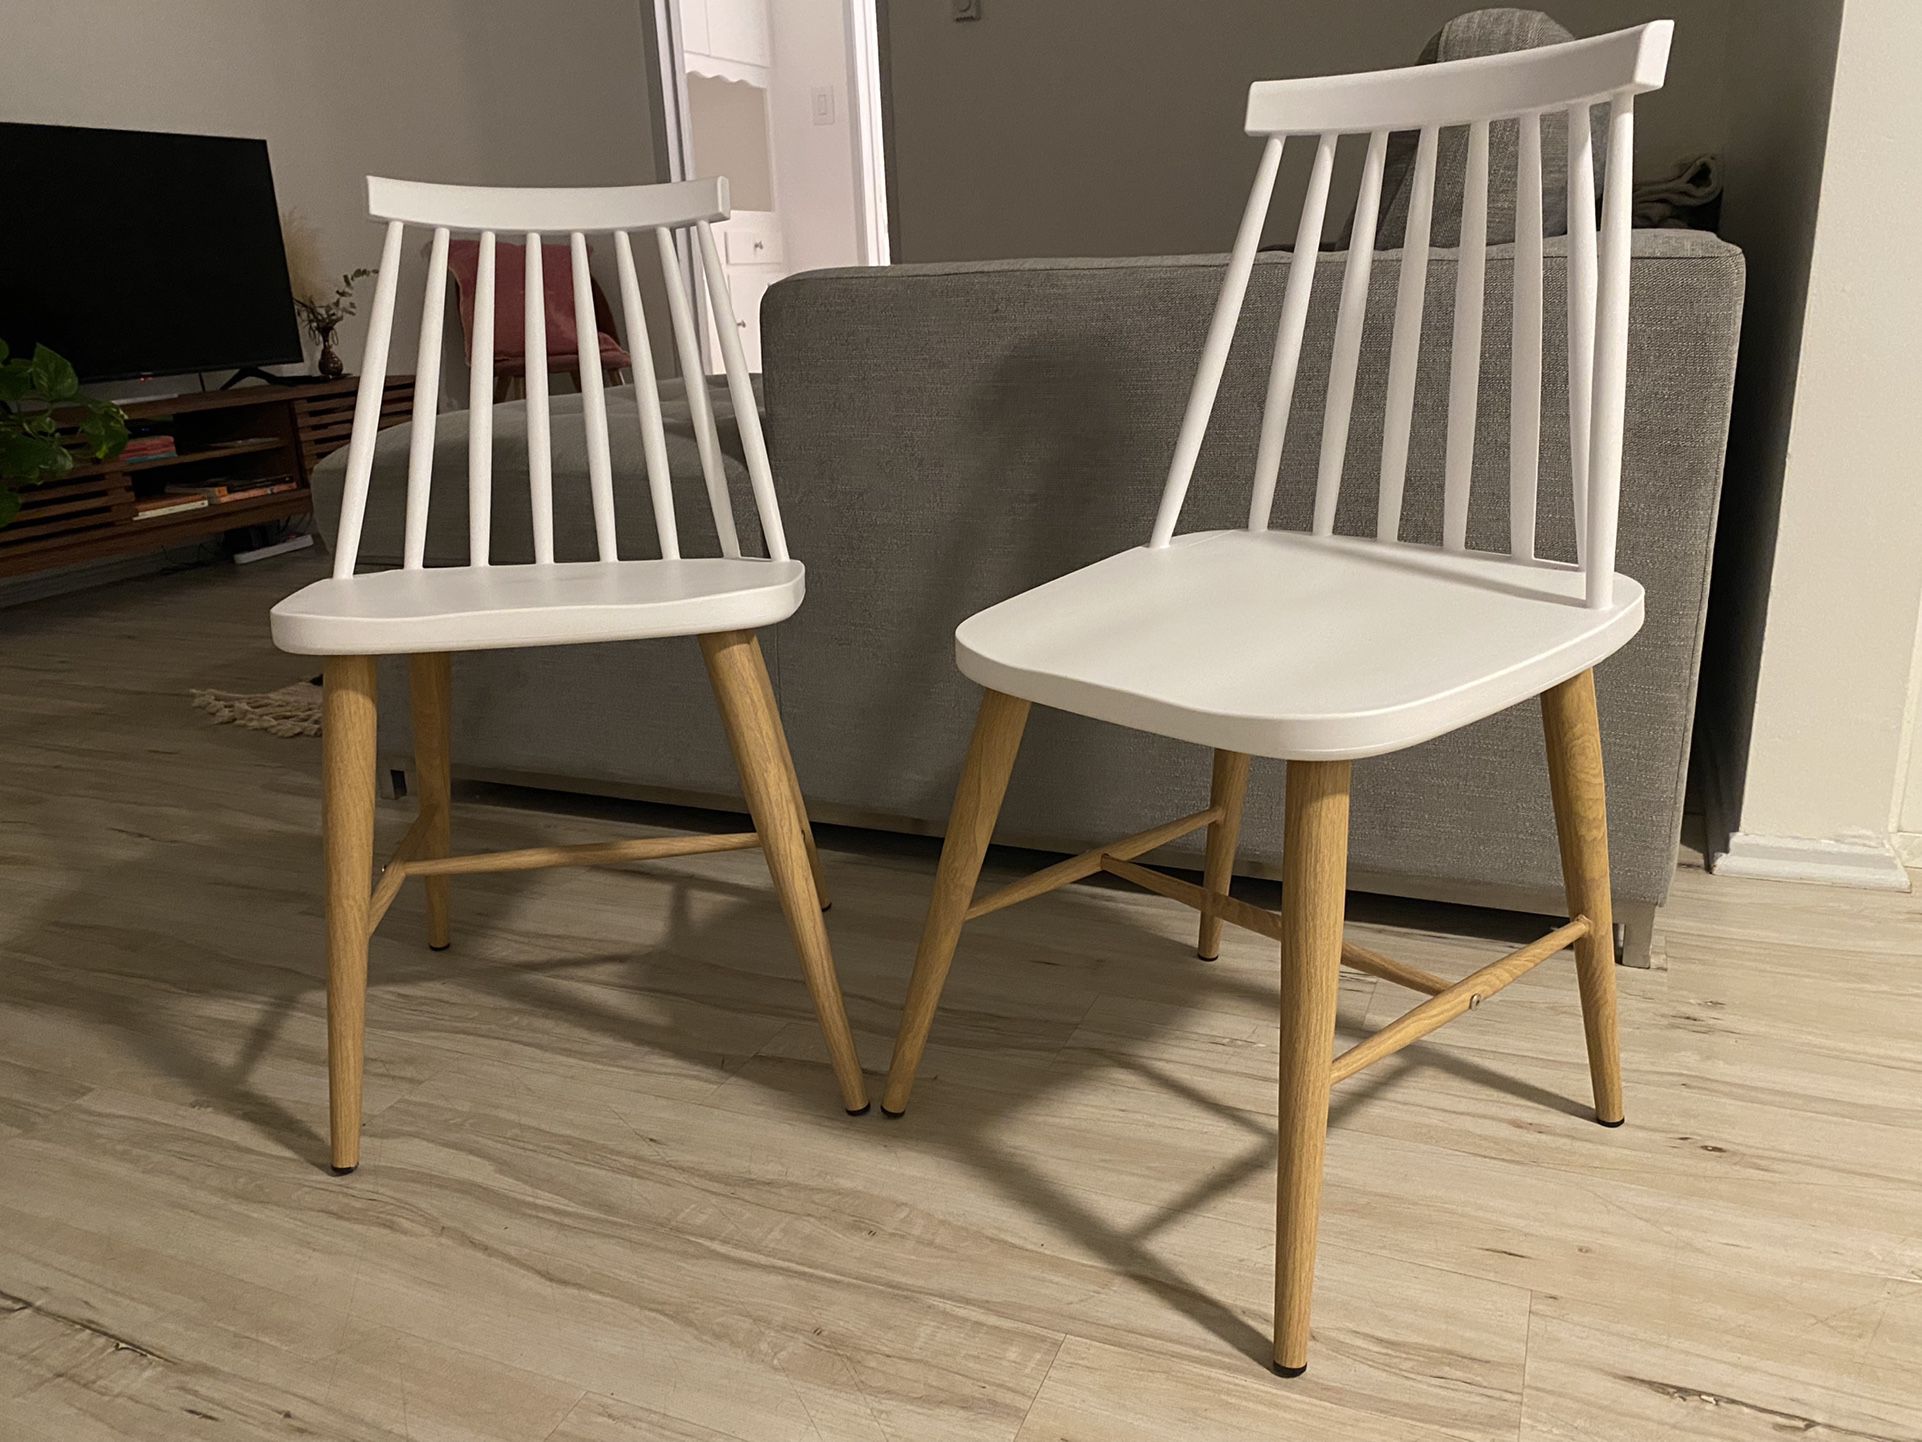 White and Tan Modern Chair Set (2)